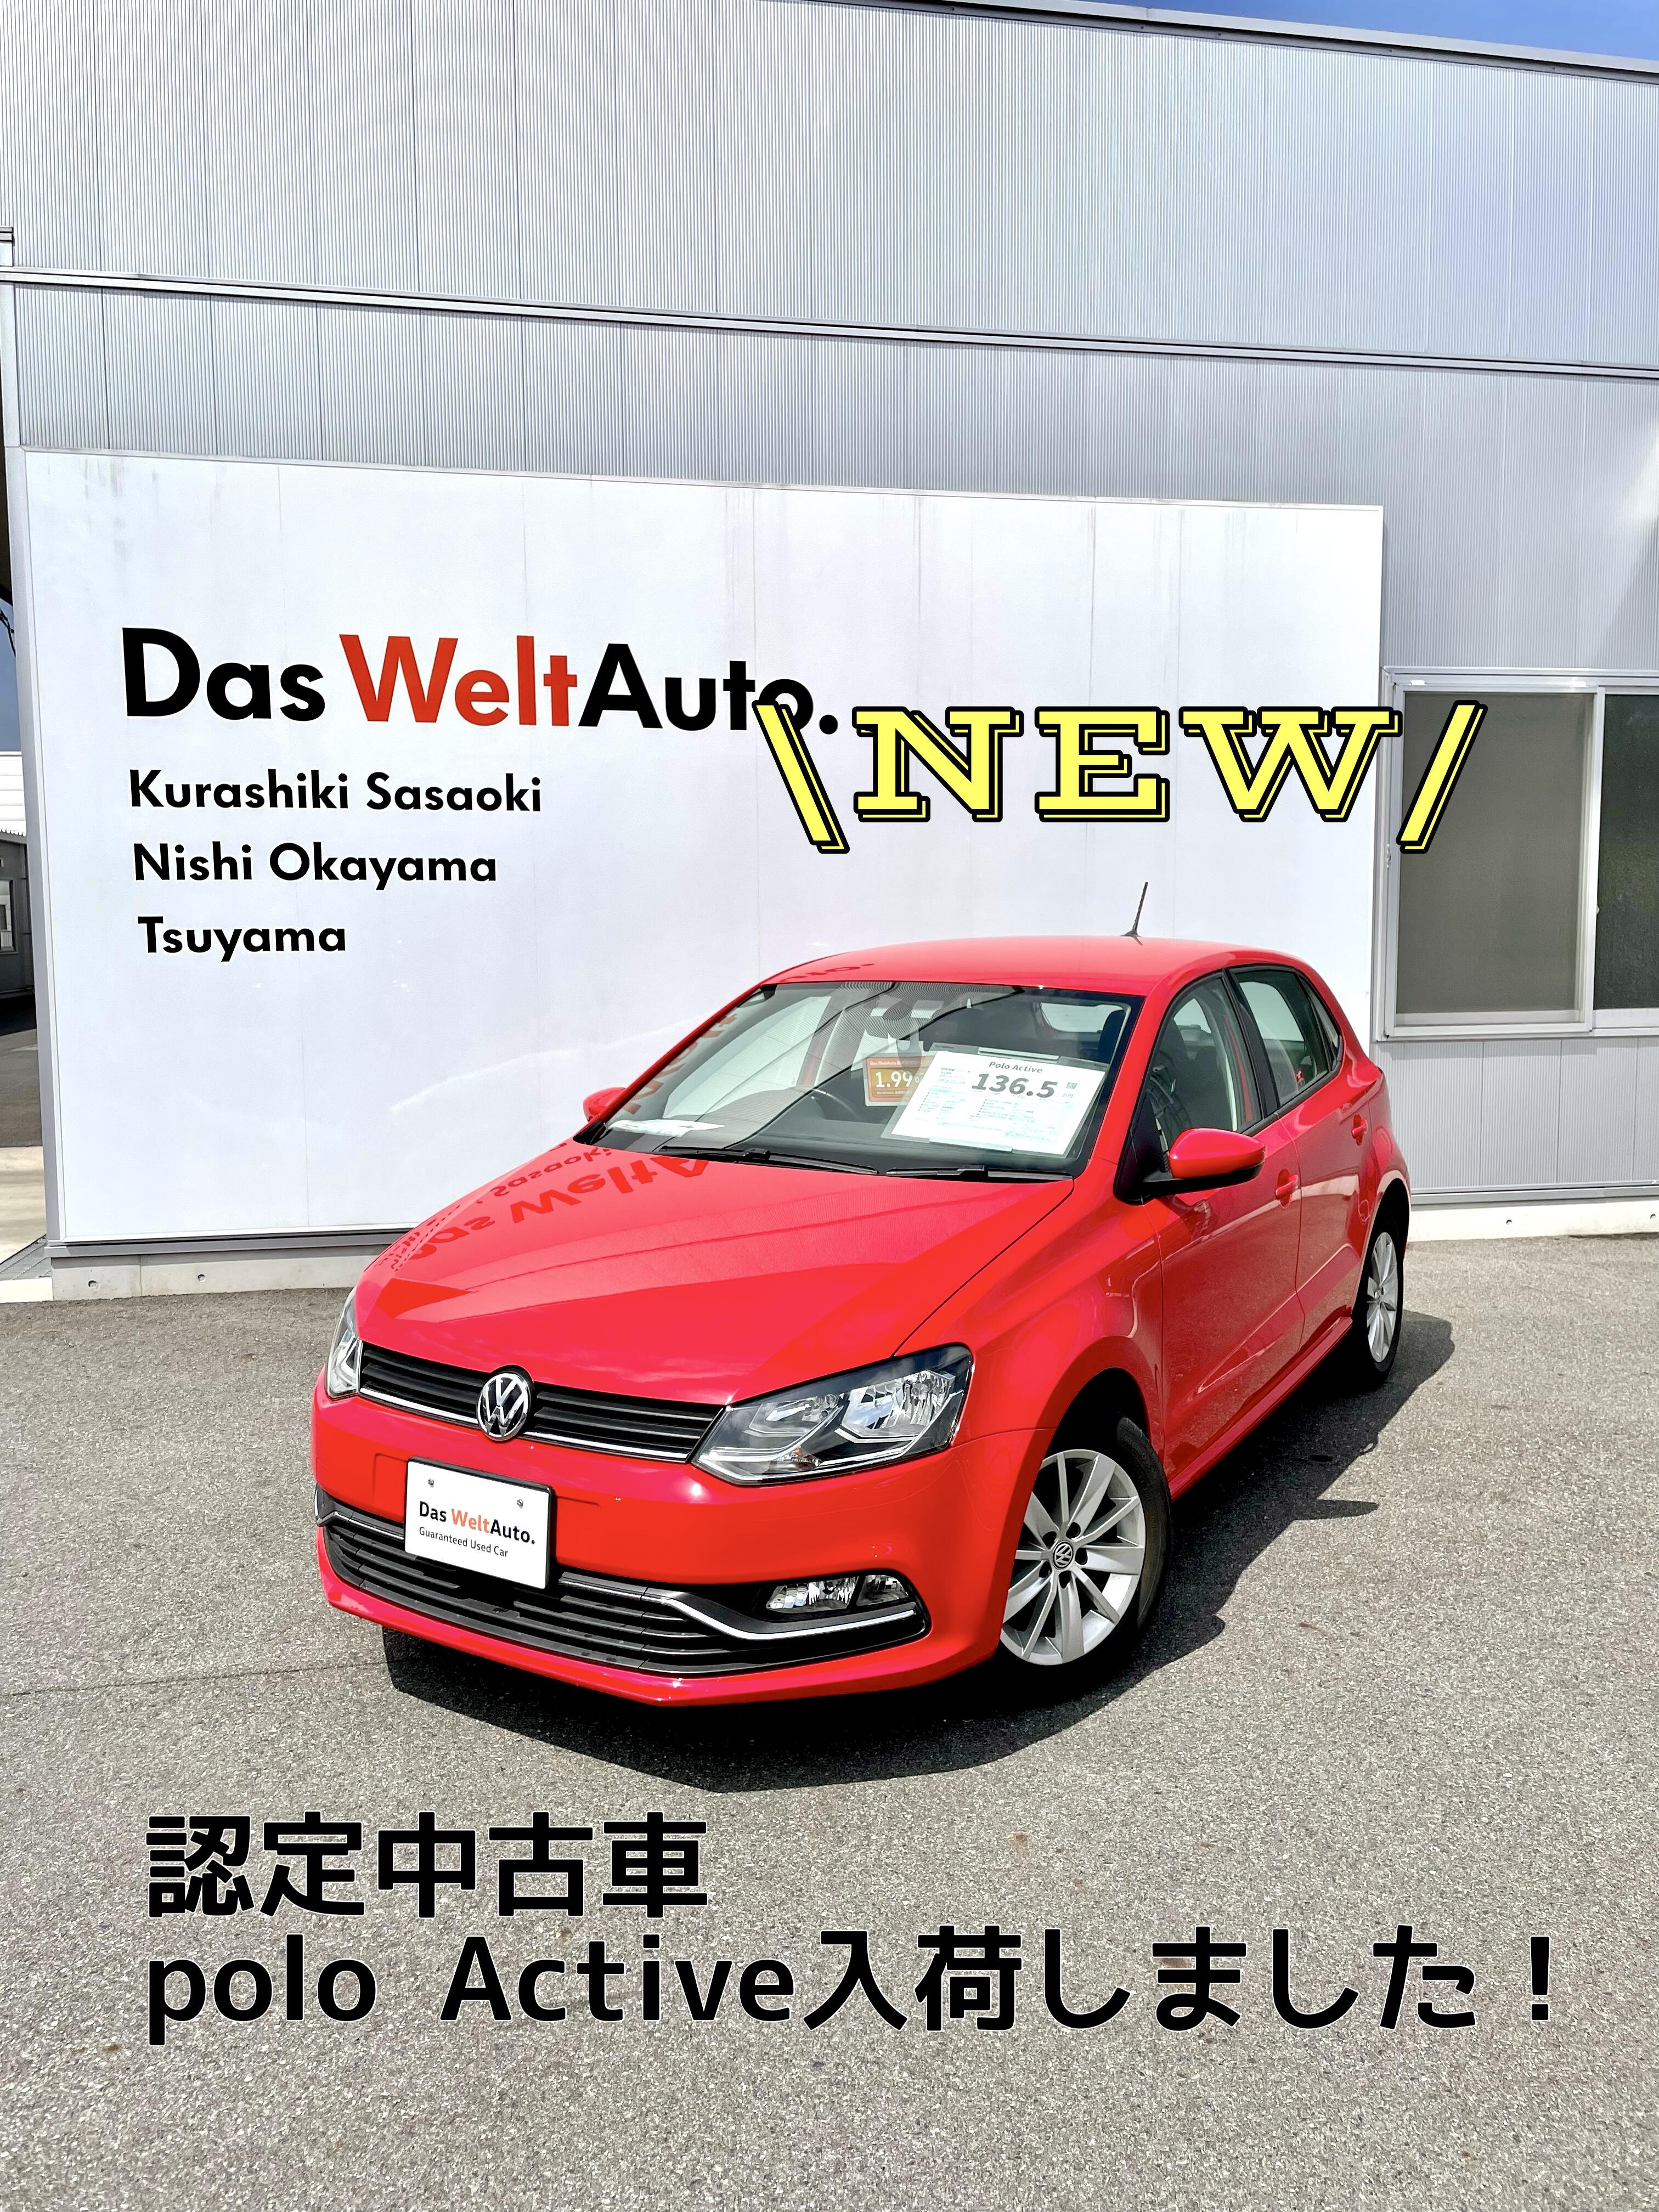 スタッフブログ New 特別仕様車polo認定中古車 Volkswagen倉敷笹沖 Volkswagen Kurashiki Sasaoki